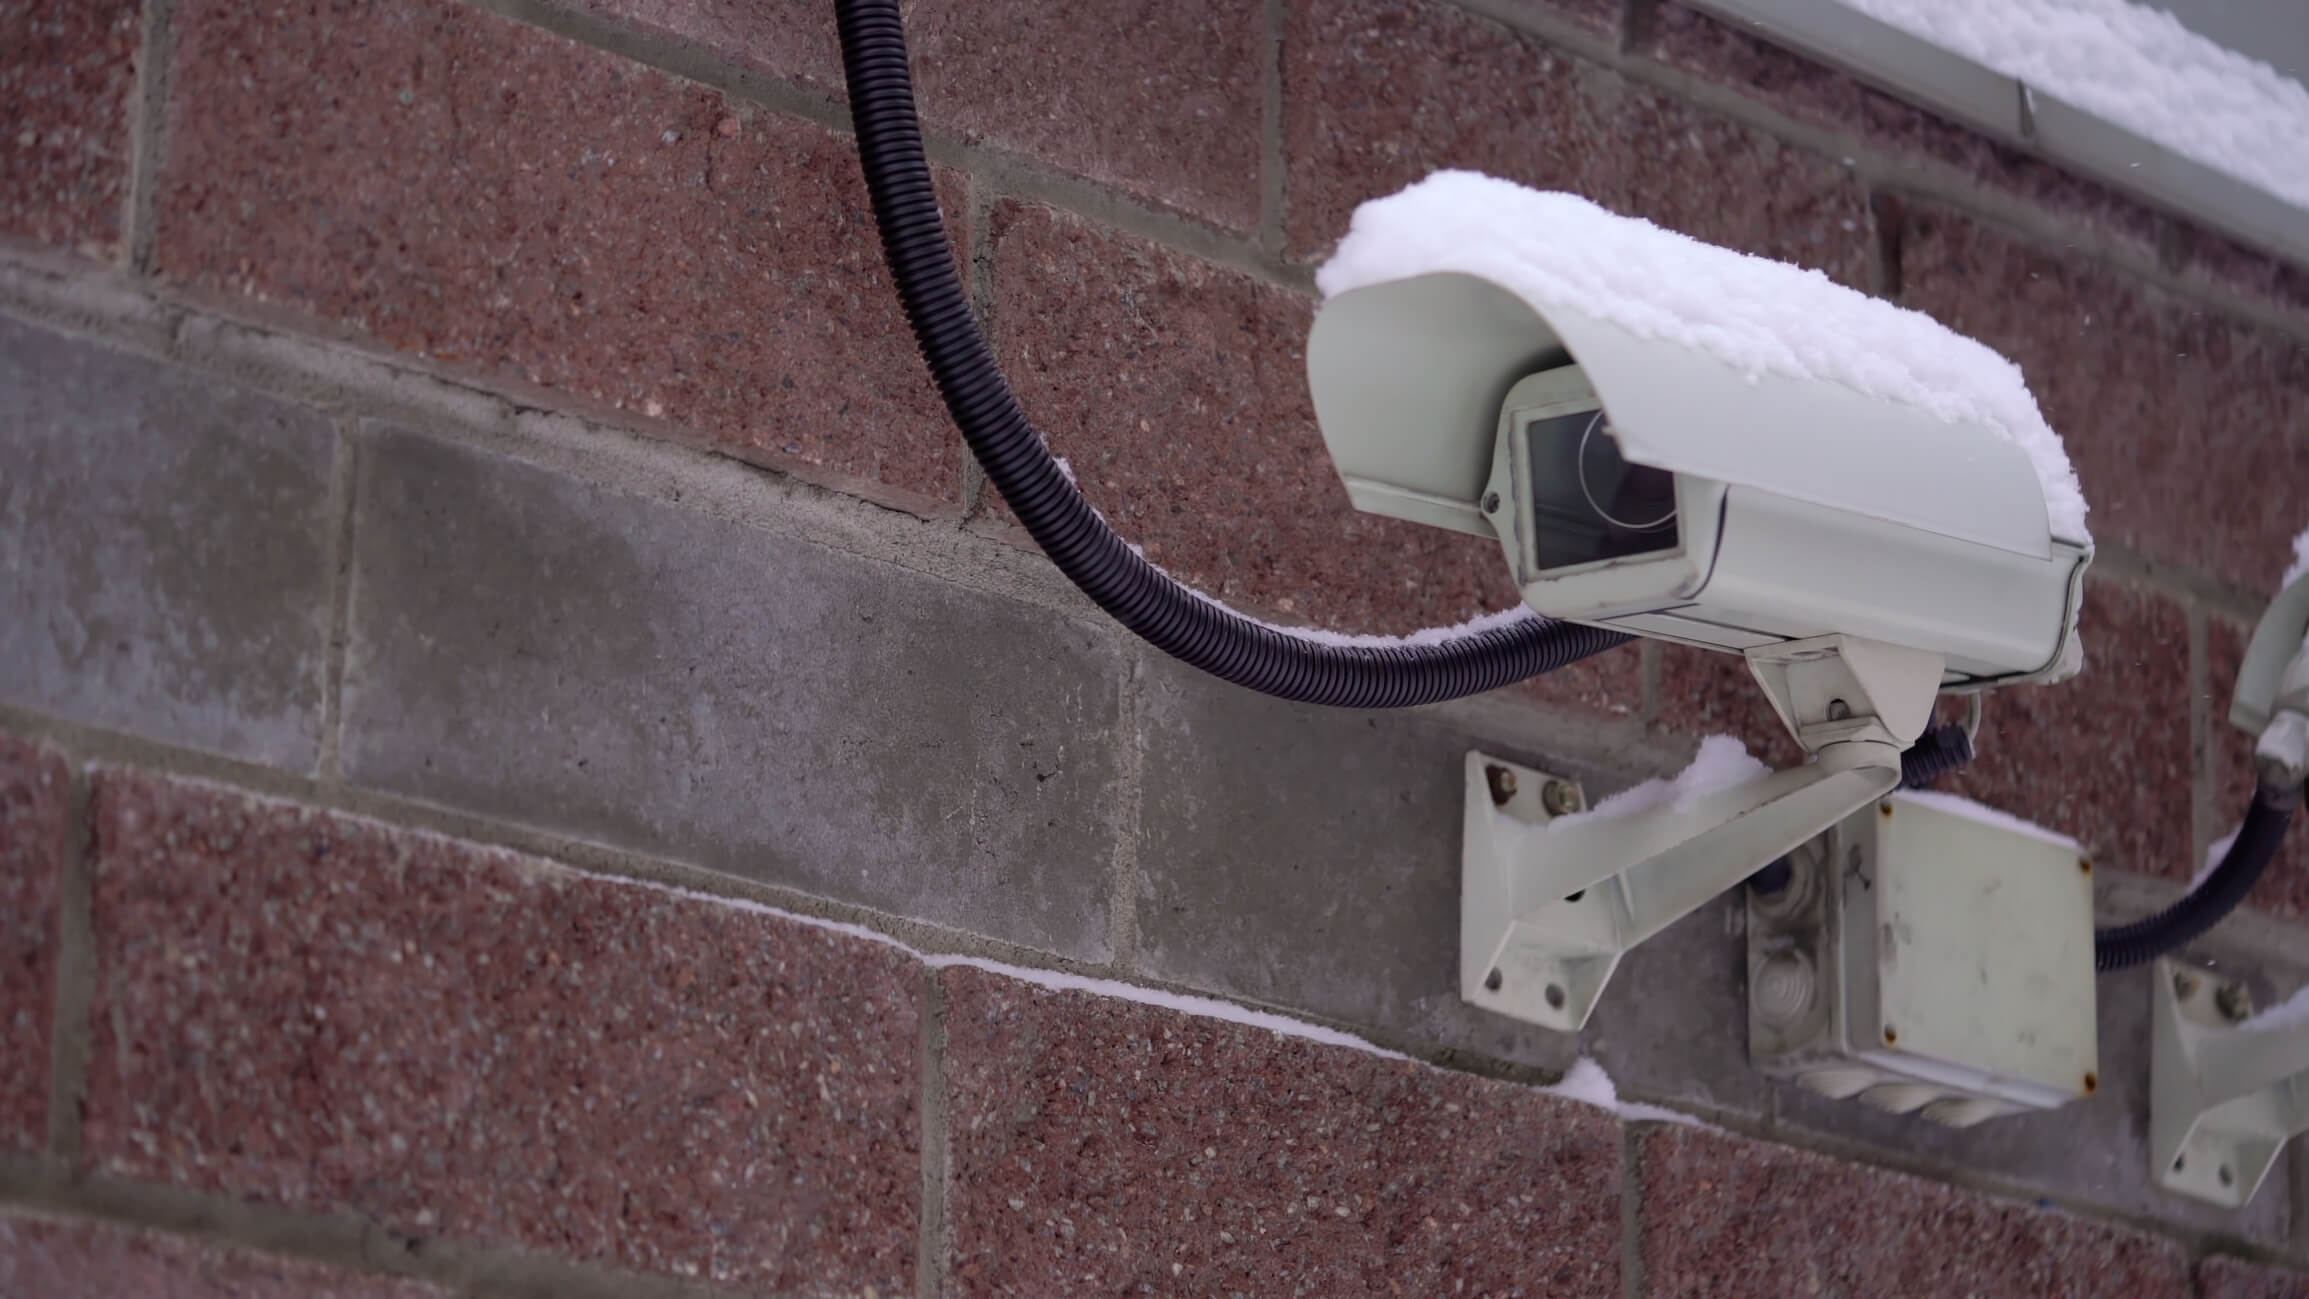 Winter security cameras